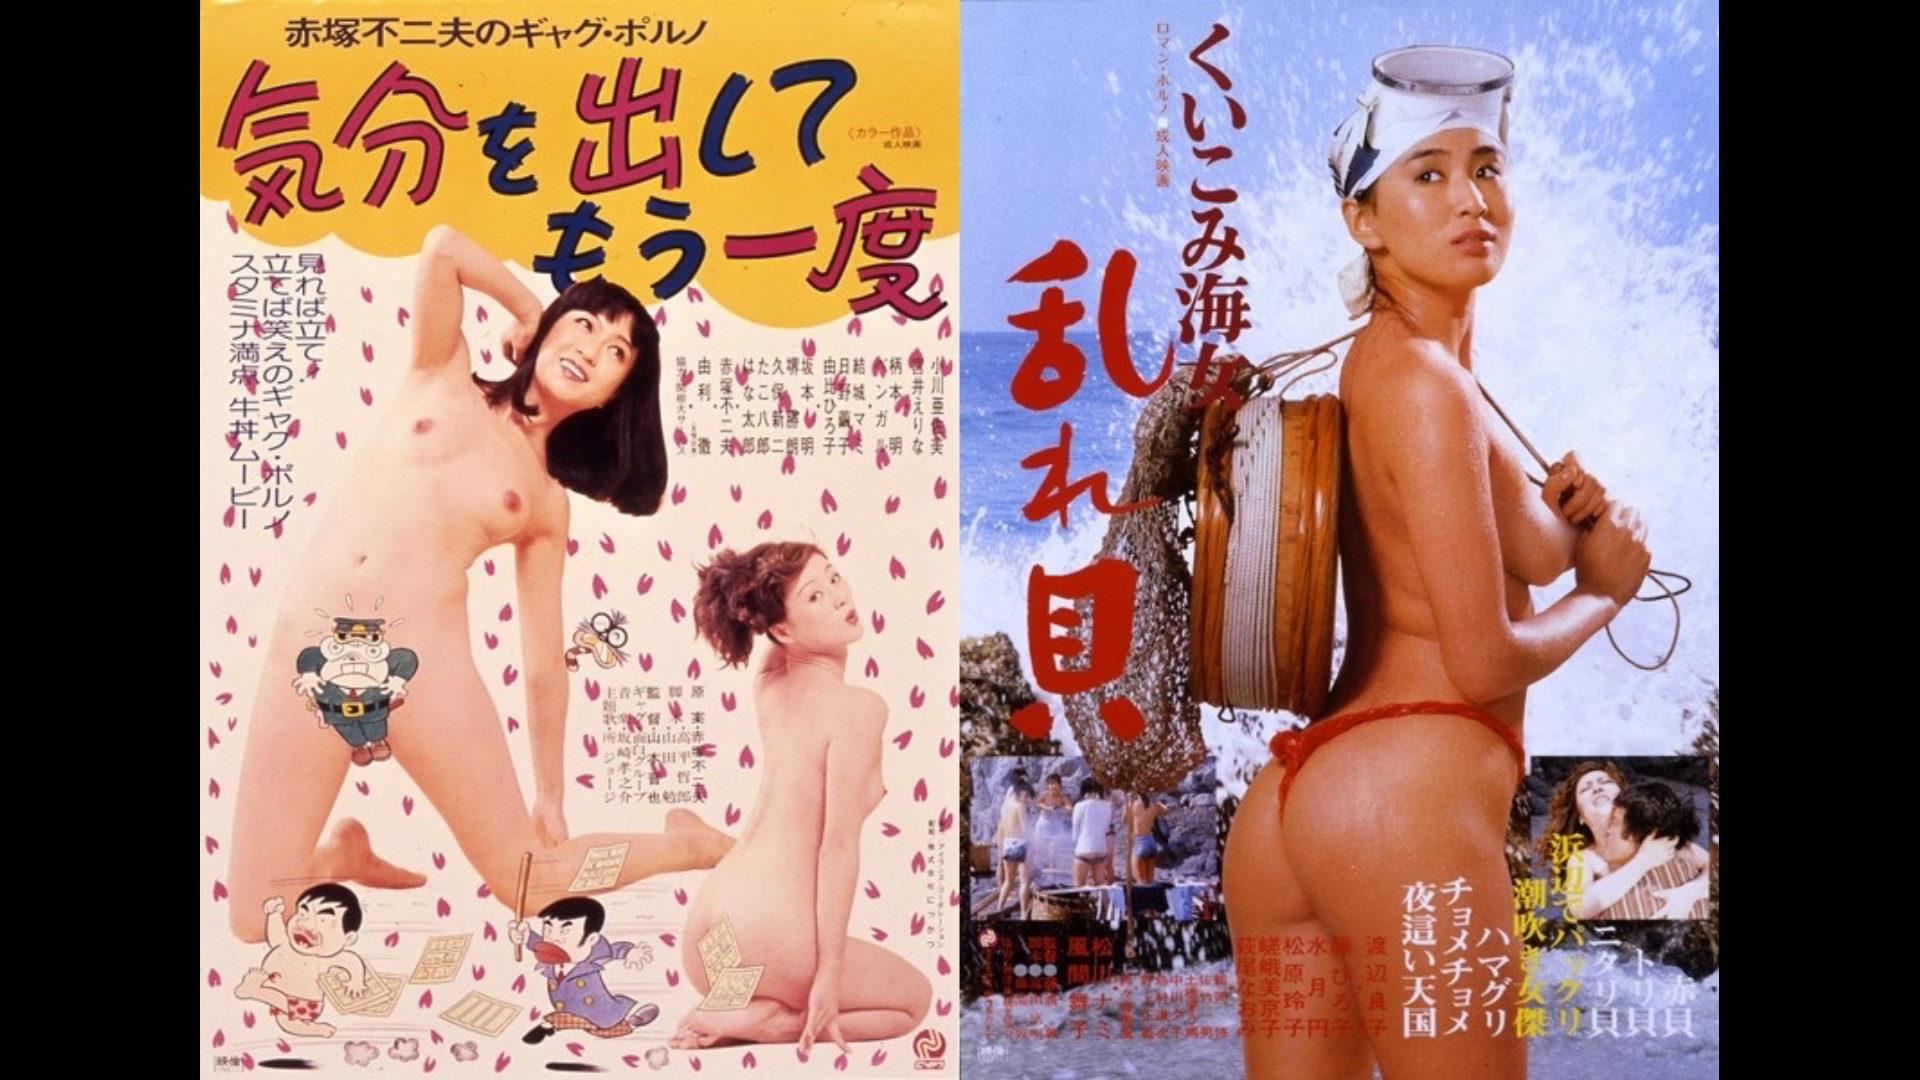 昭和 の ポルノ 映画